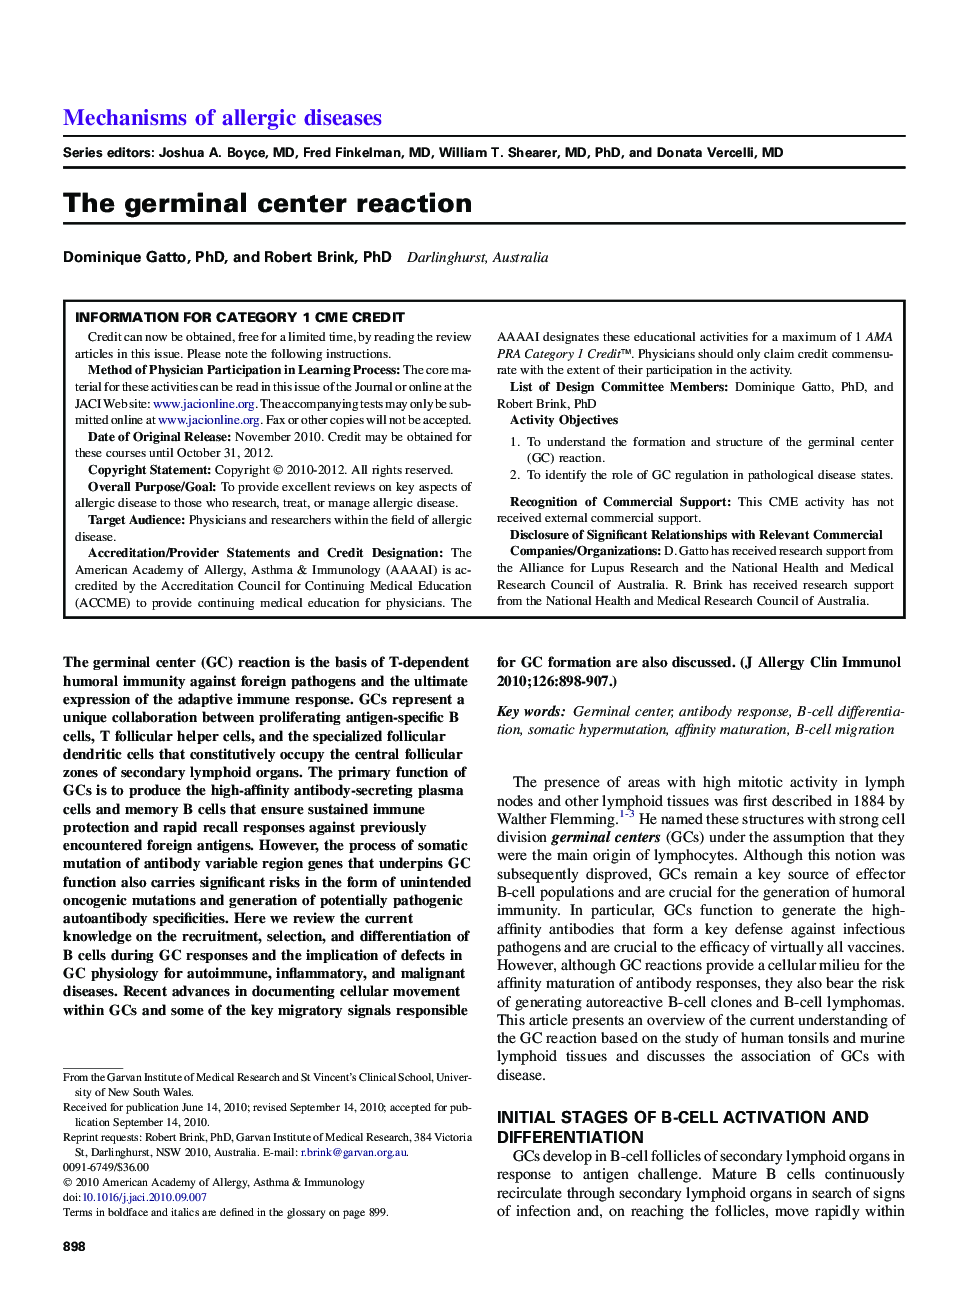 The germinal center reaction 